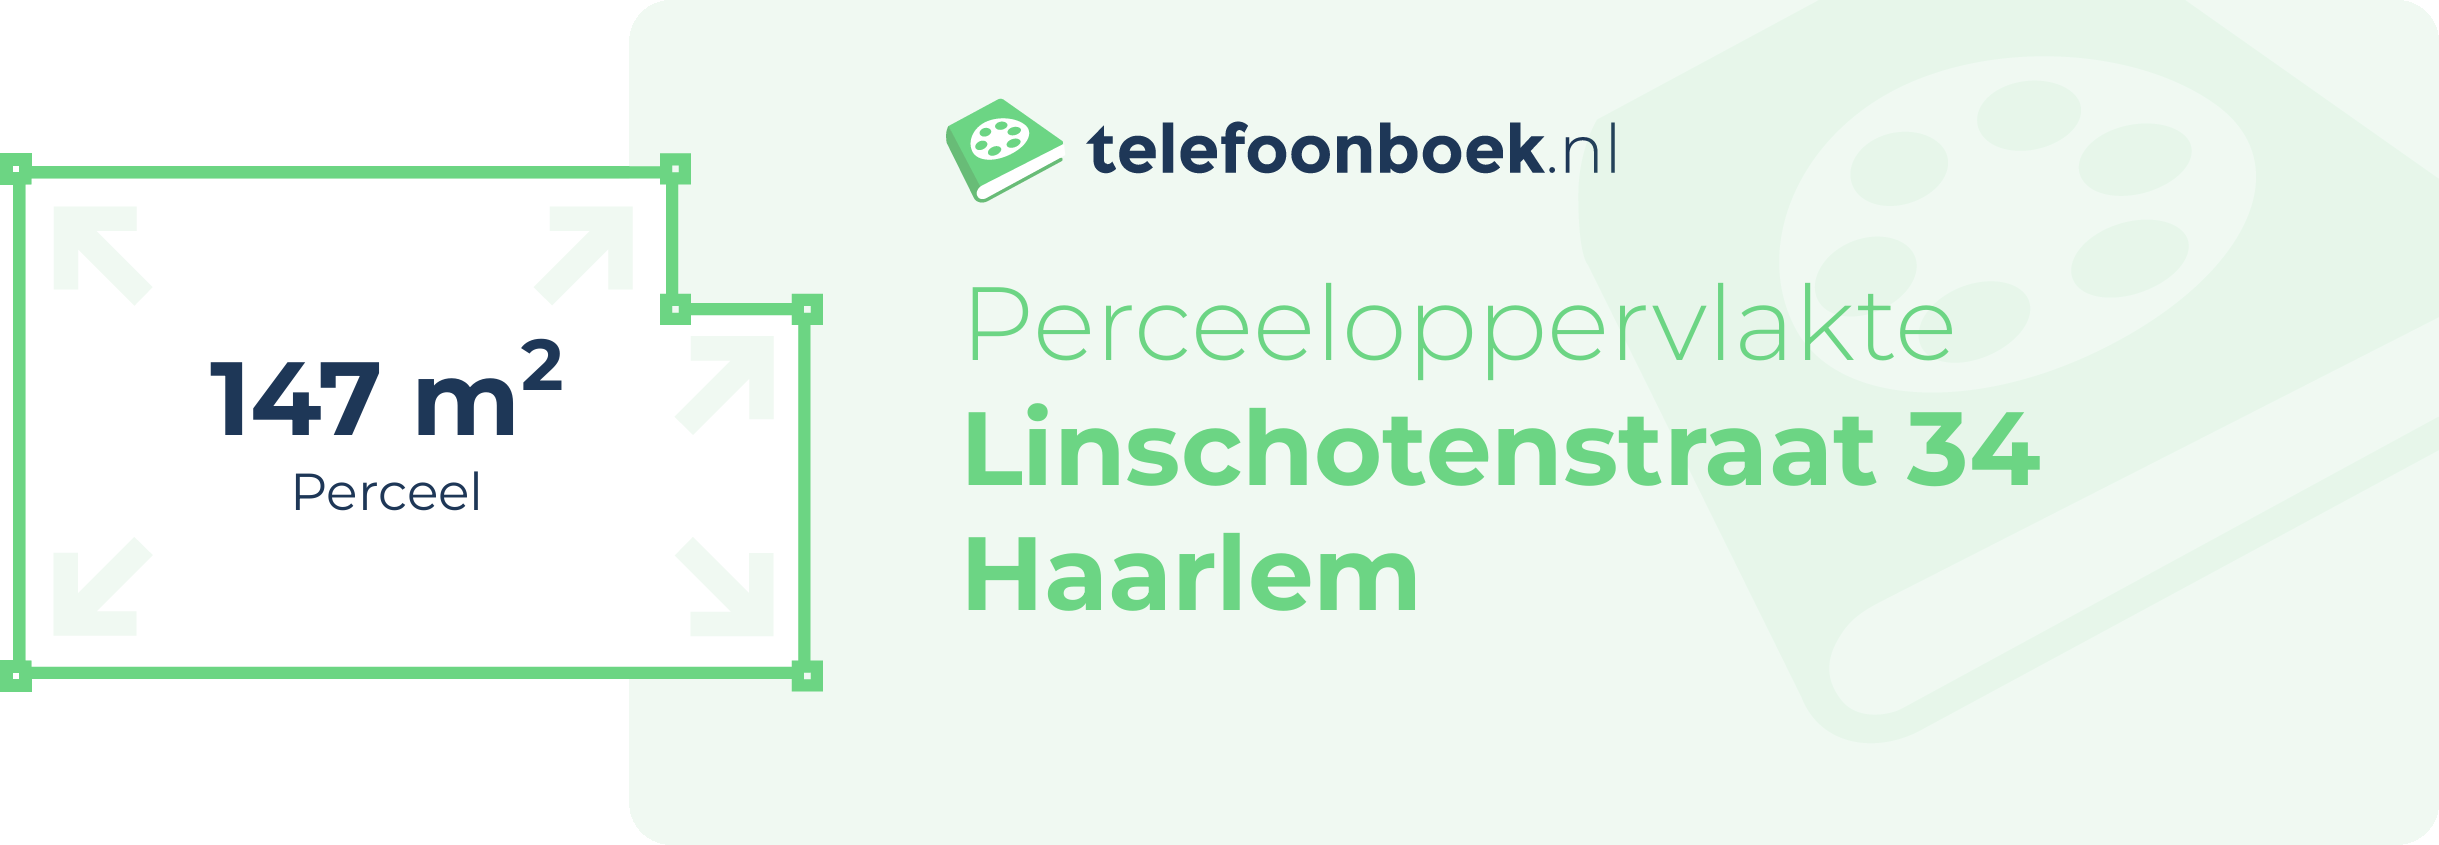 Perceeloppervlakte Linschotenstraat 34 Haarlem